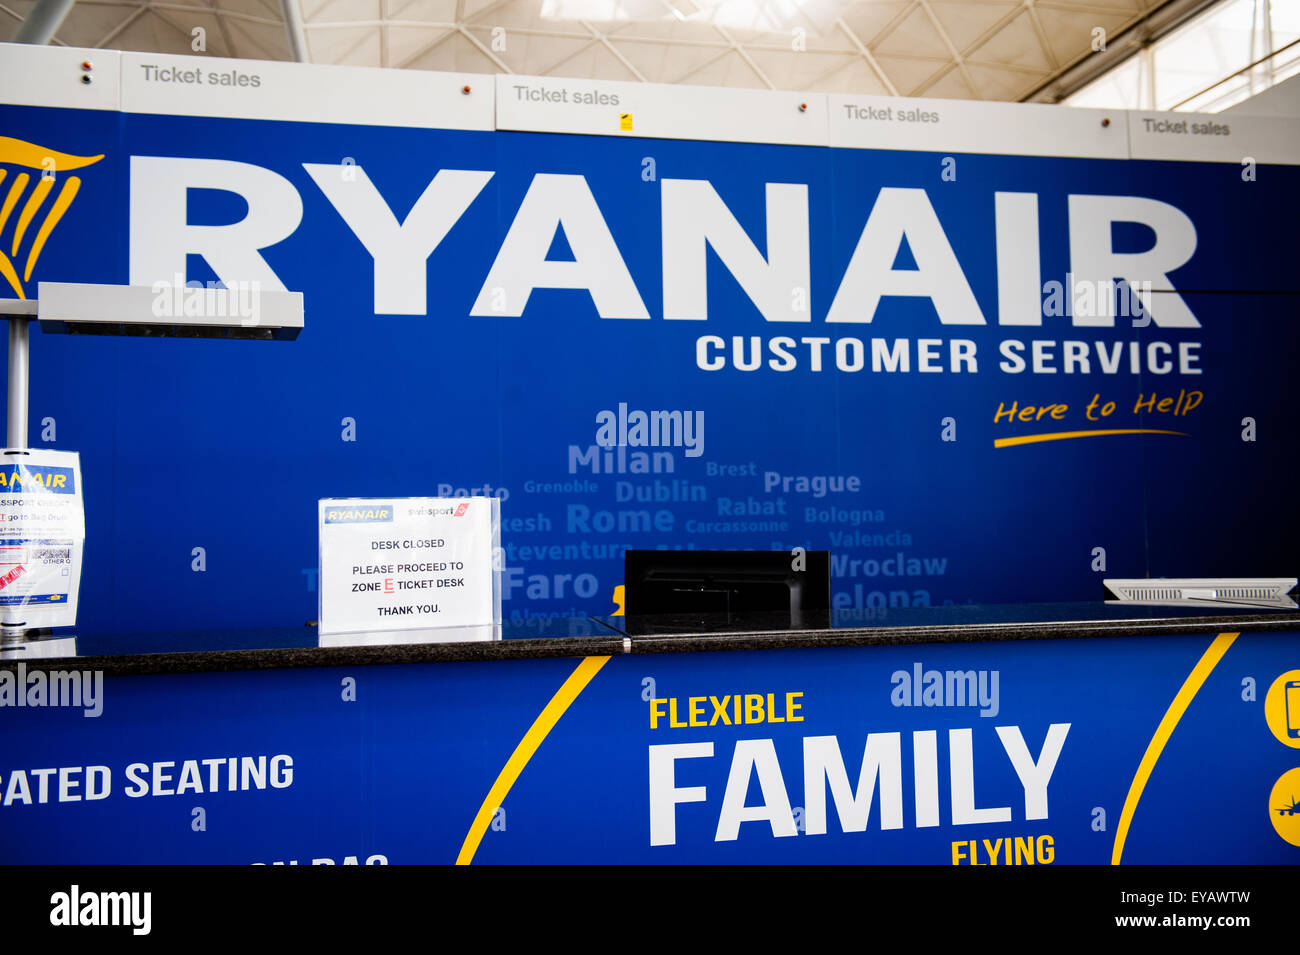 Ryanair bag Banque de photographies et d'images à haute résolution - Alamy